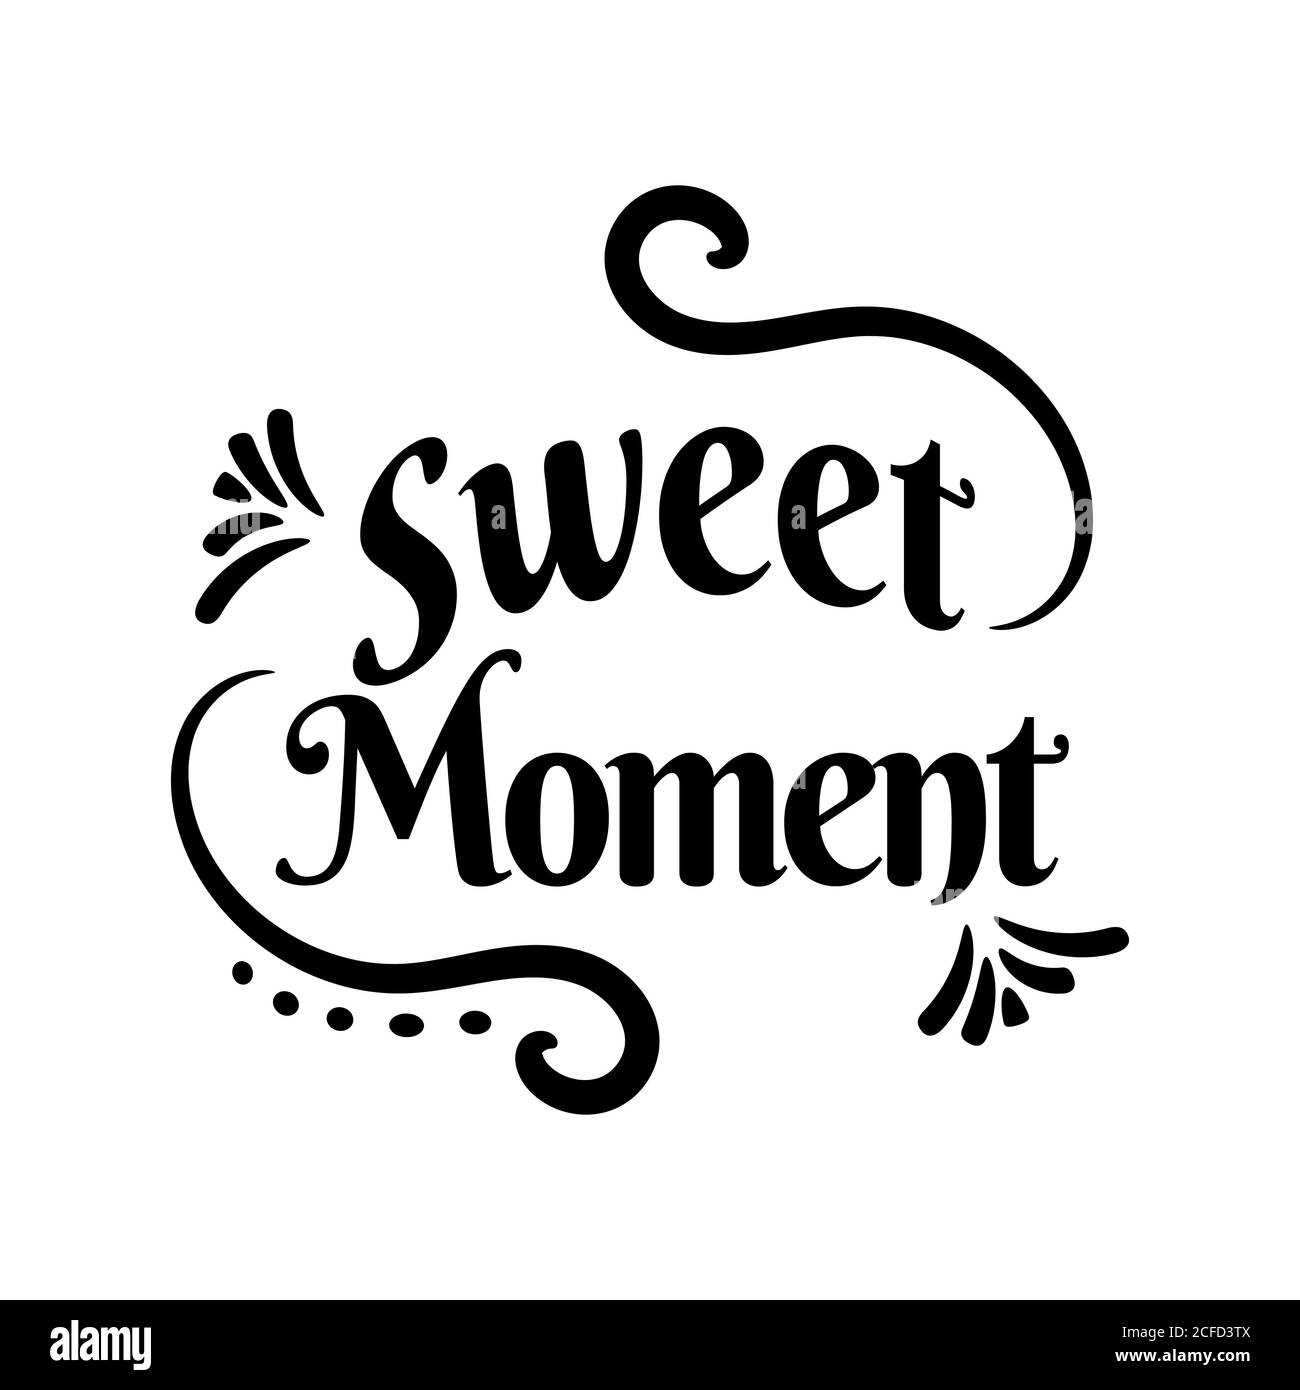 Motif calligraphique illustration vectorielle avec inscription « Sweet moment » dessinée à la main pour imprimer des cartes d'invitation et de vœux et des affiches Illustration de Vecteur